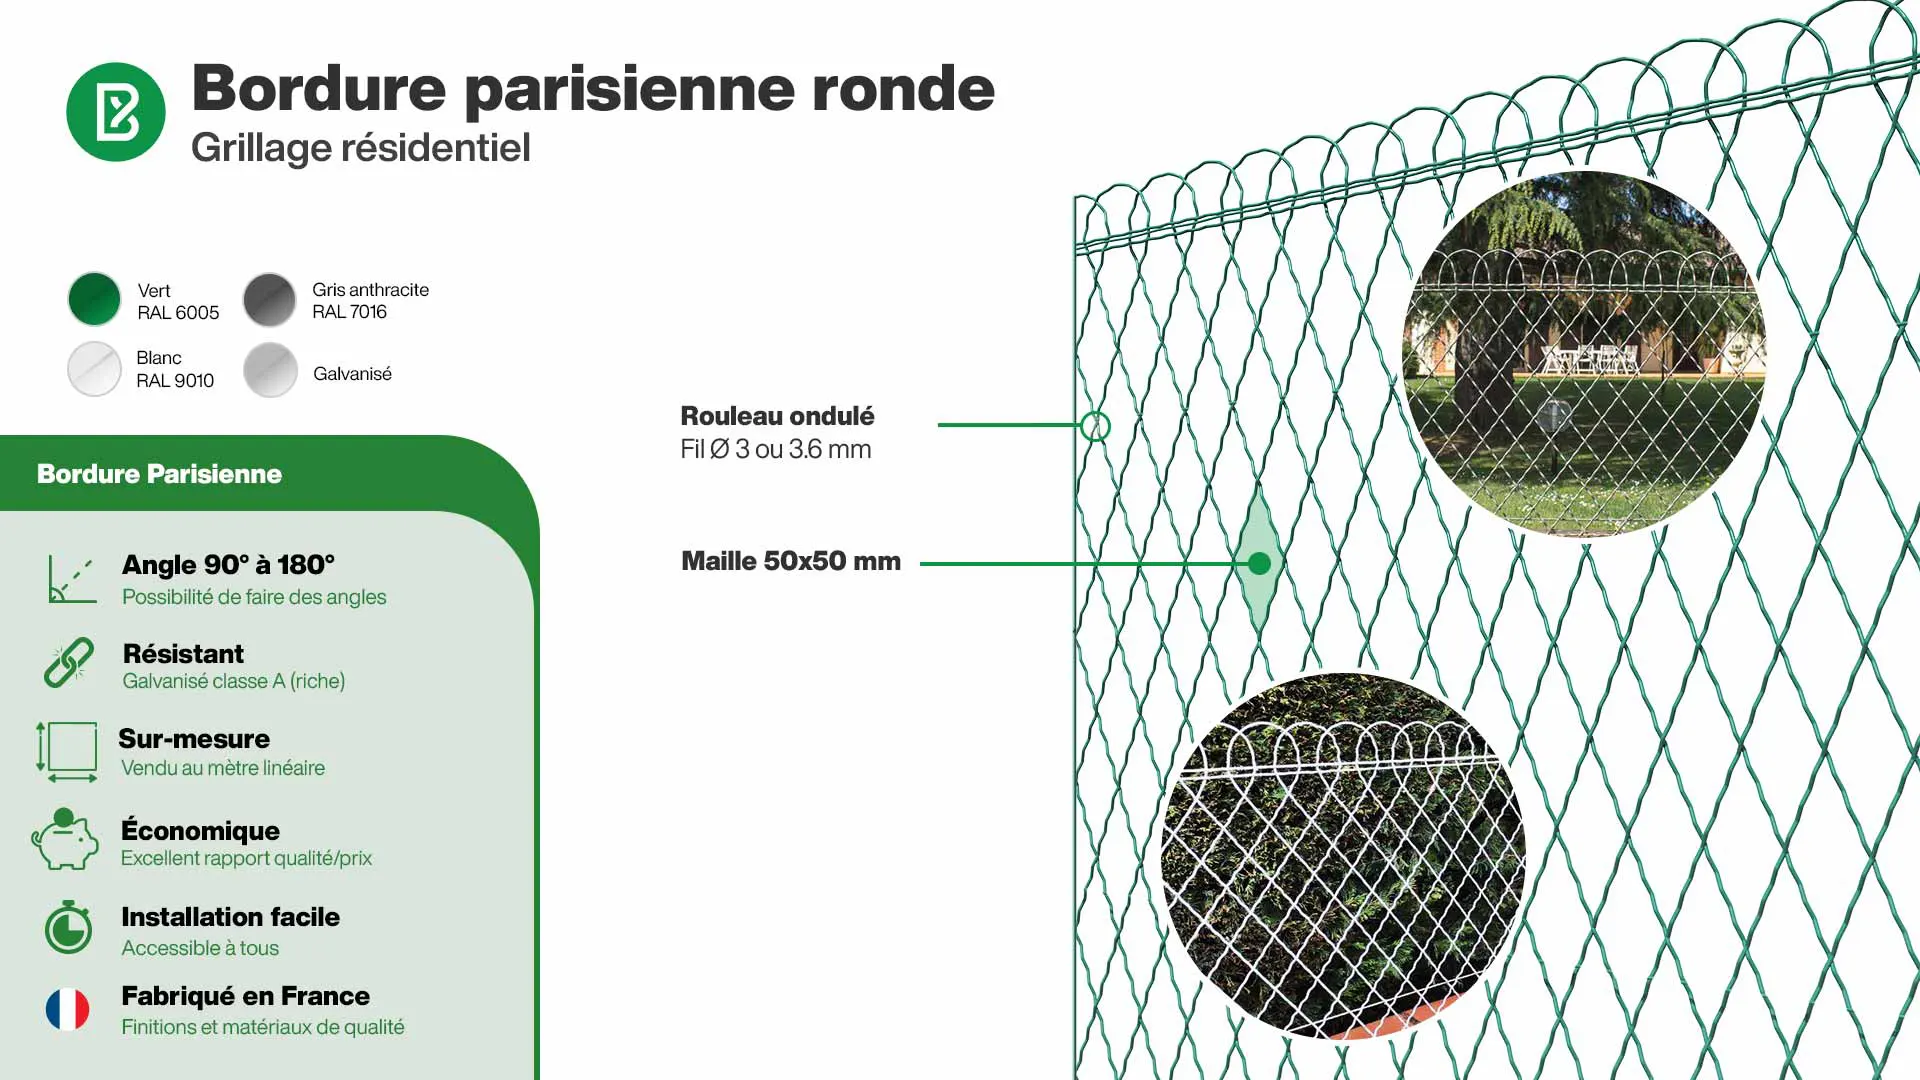 Grillage souple : Infographie de la bordure parisienne ronde